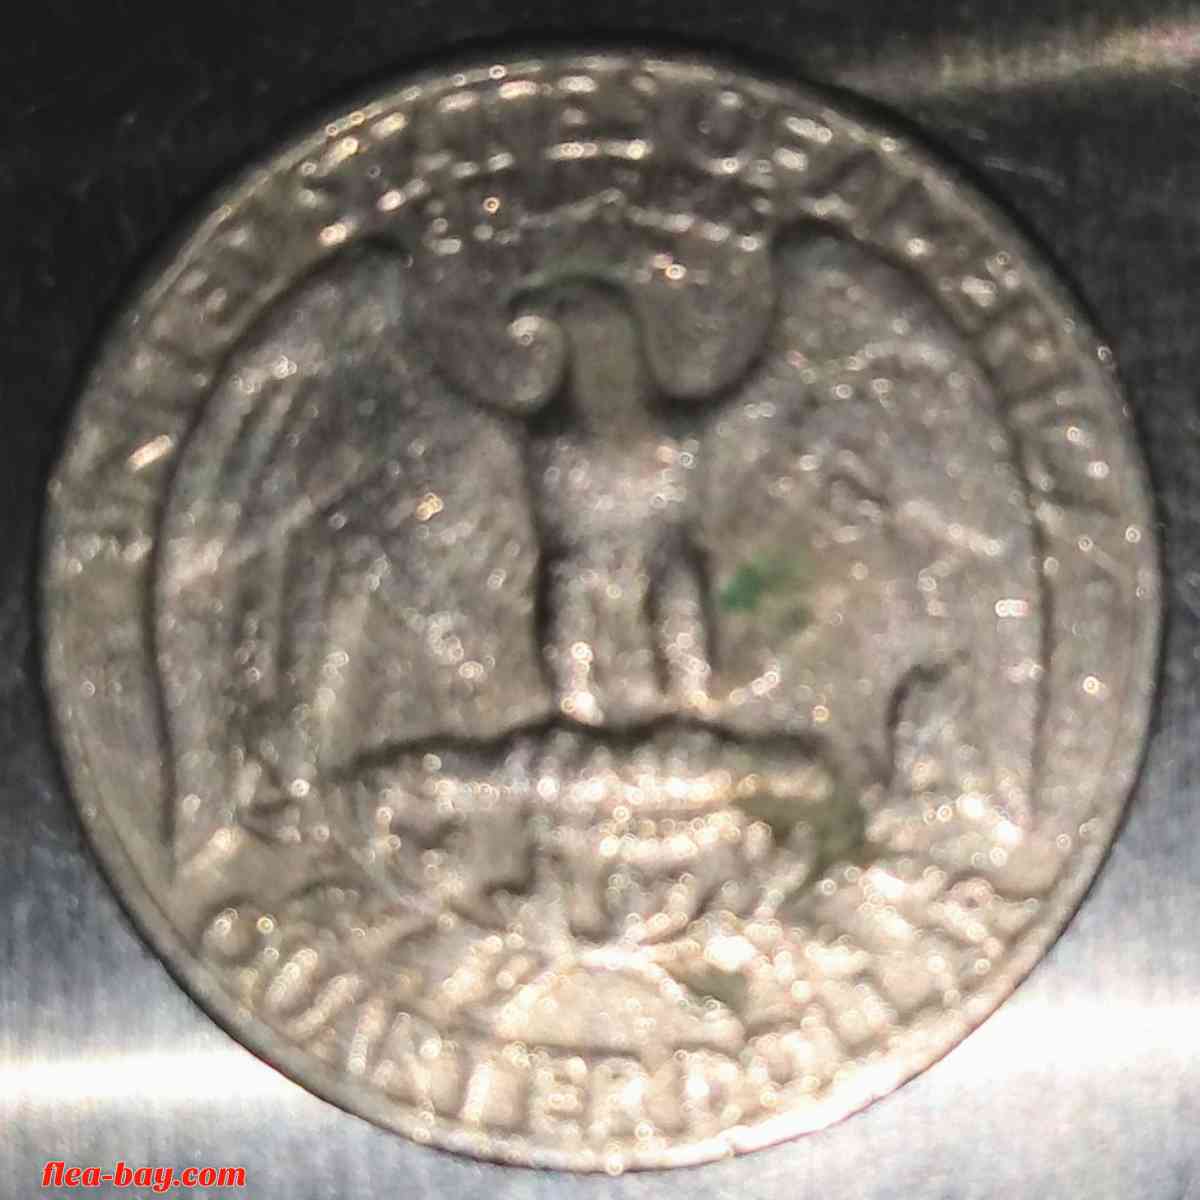 1967-No.mint mark? Washington Quarter Dollar